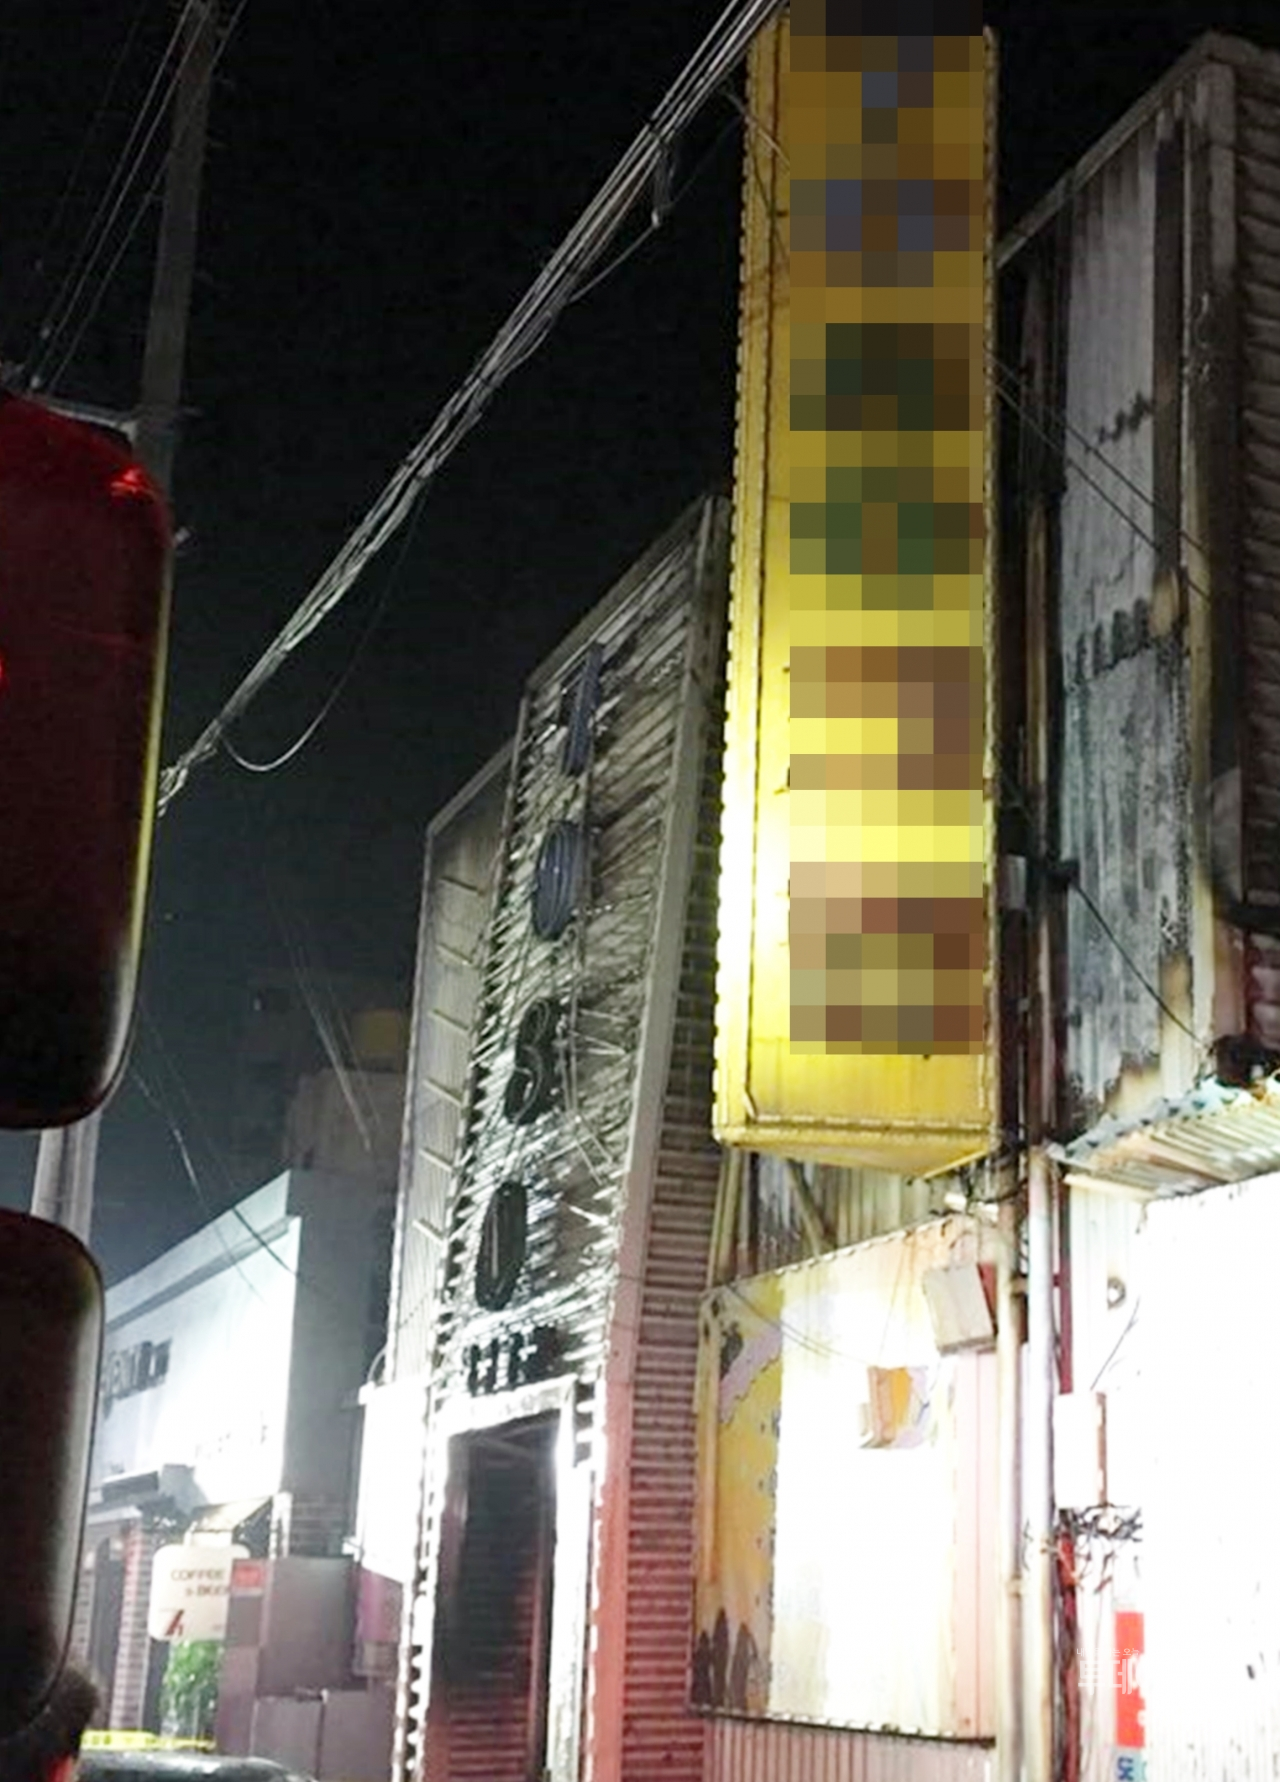 지난 17일 오후 9시 53분경 군산시 장미동 소재의 한 유흥주점에서 방화로 추정되는 화재가 발생해 3명이 숨지고 30명이 부상을 입었다 ⓒ뉴시스